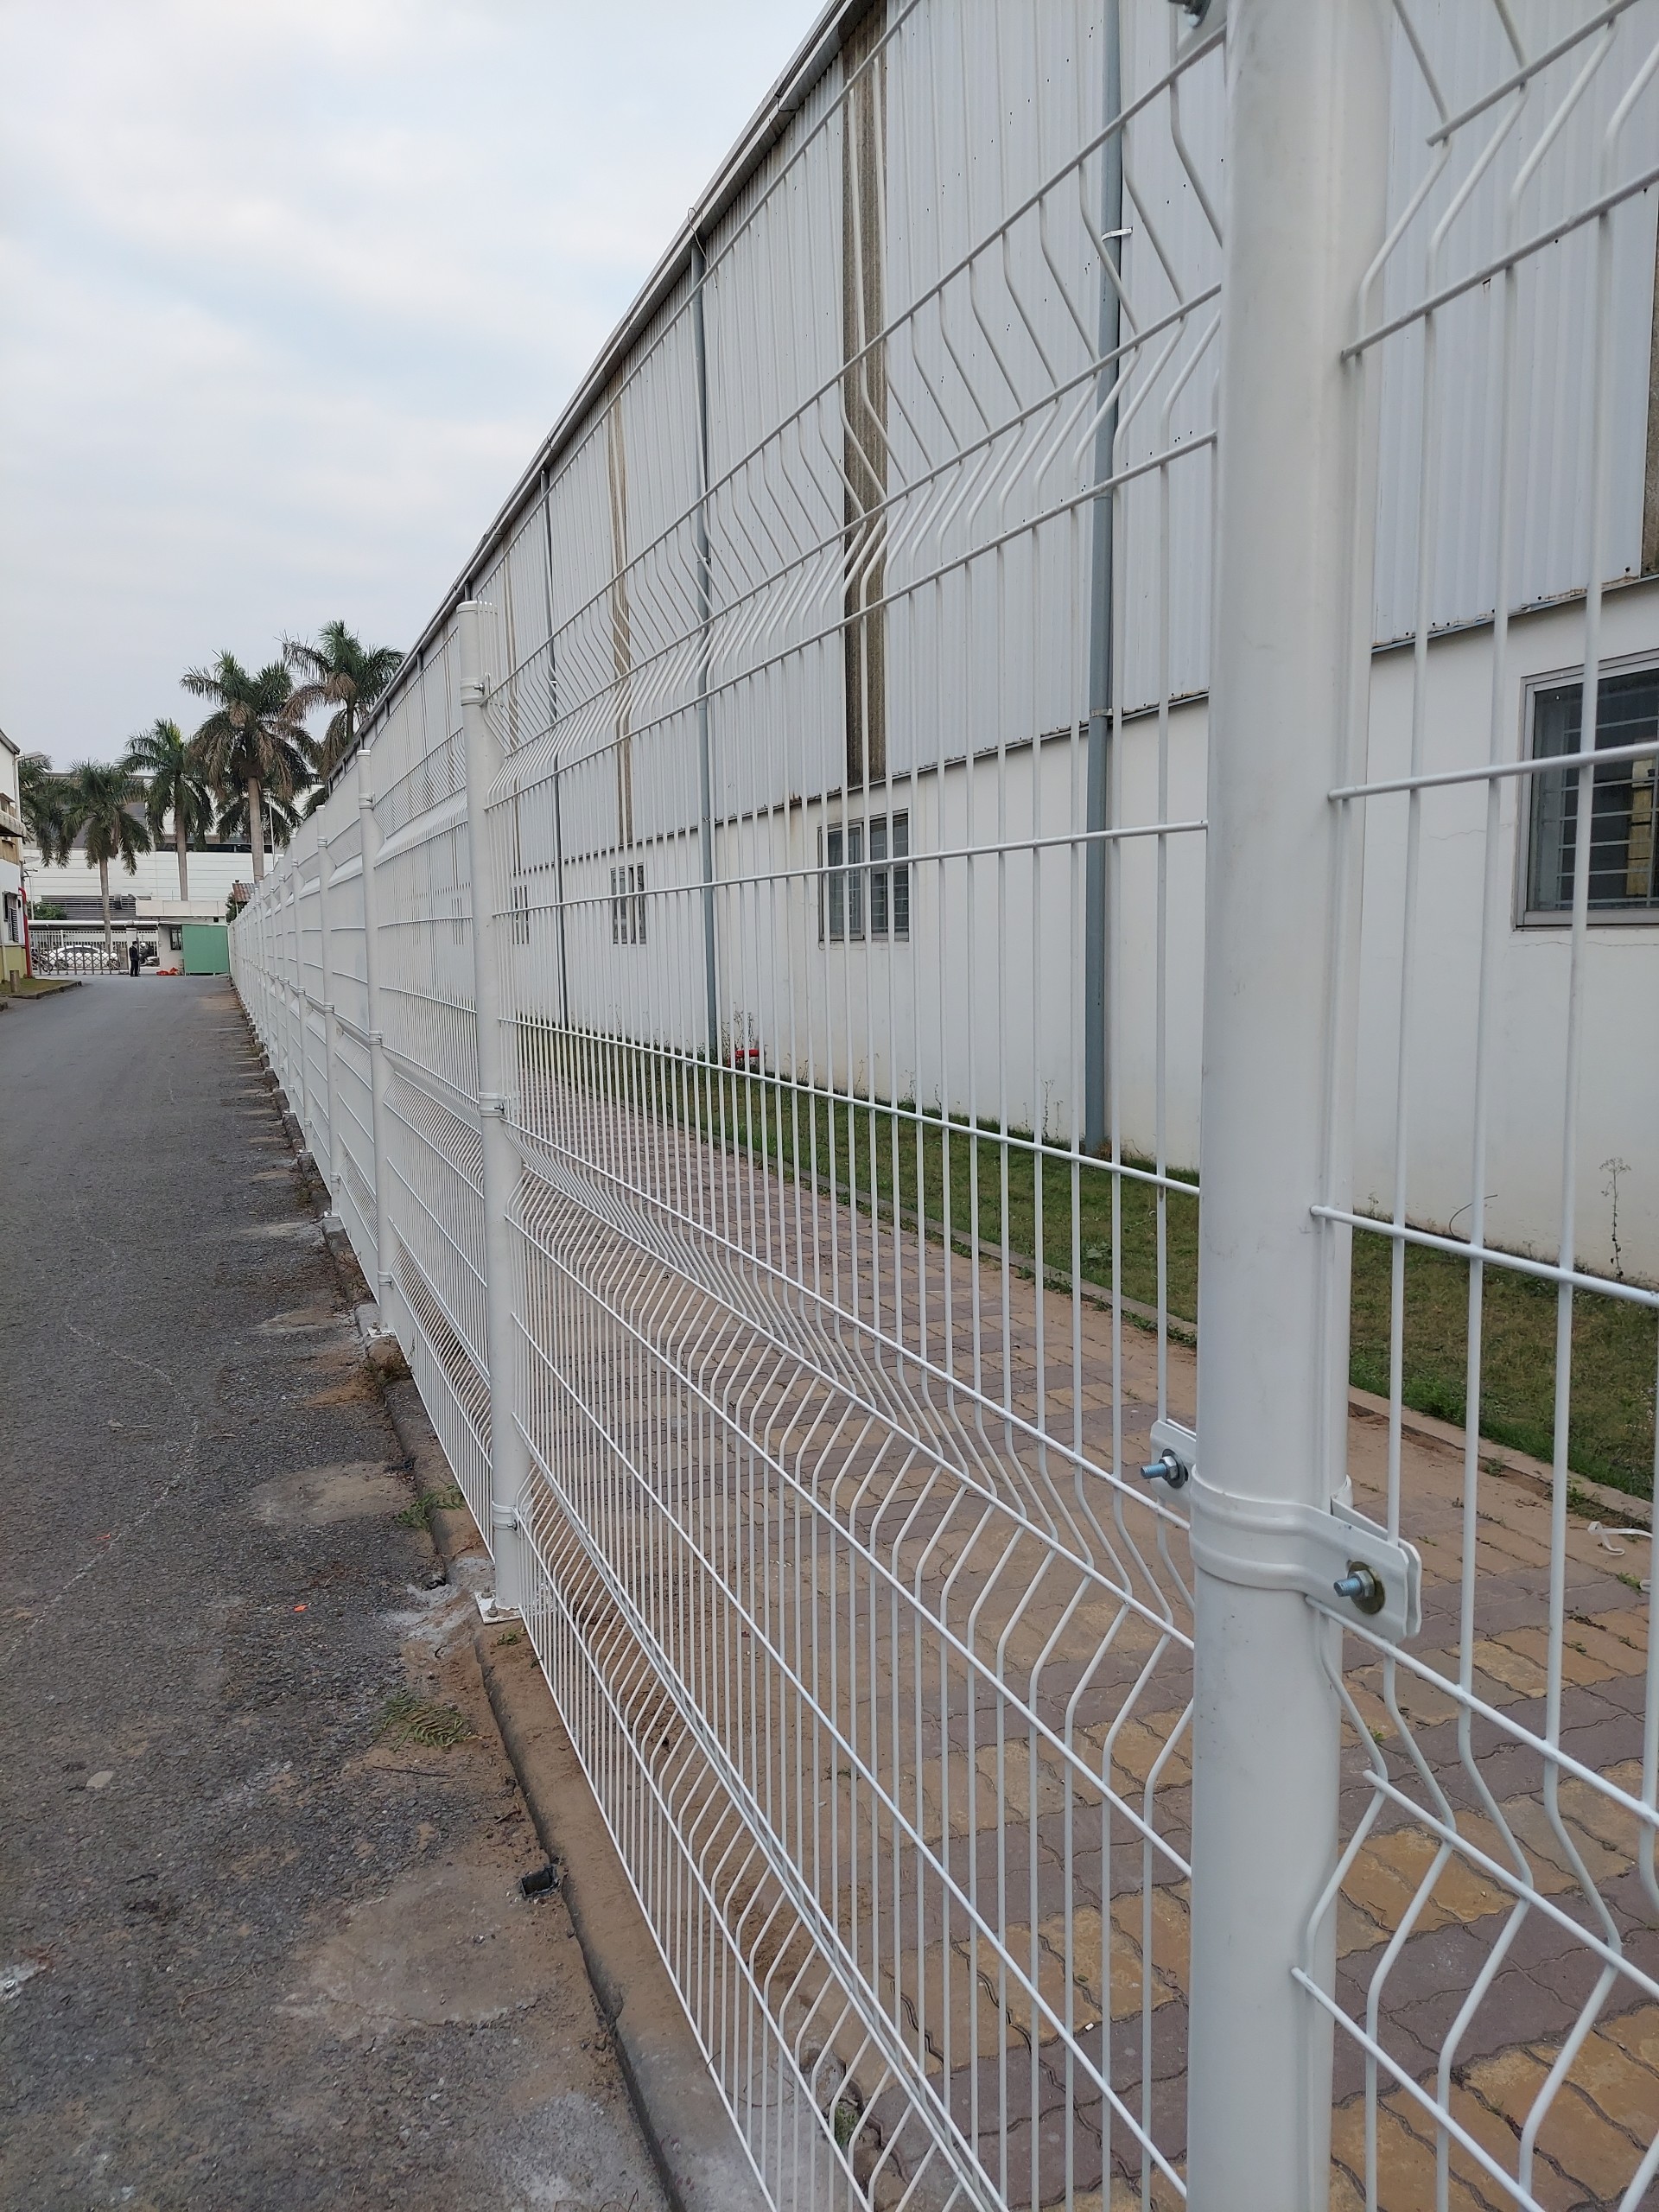 Chuyên cung cấp hàng rào lưới thép hàn - lưới dập giãn